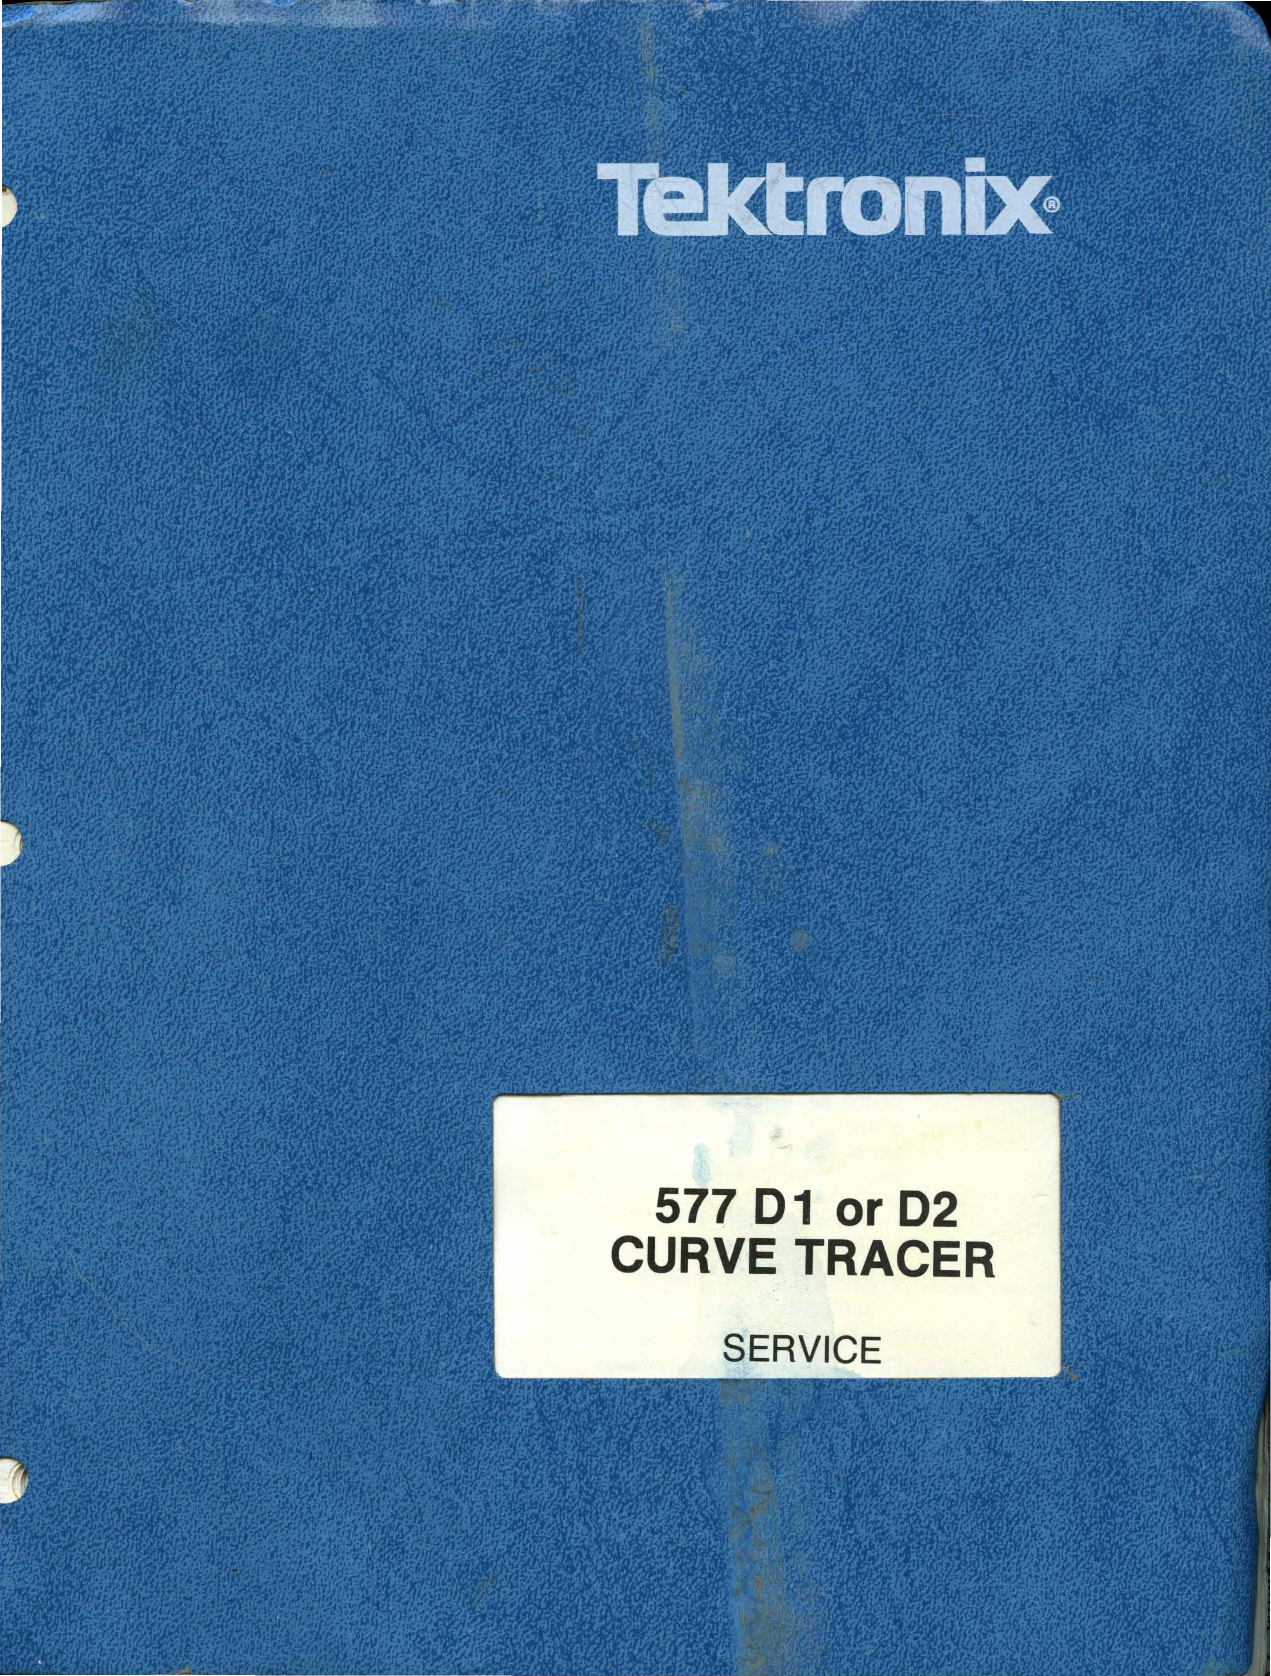 Tektronix 571 manual download